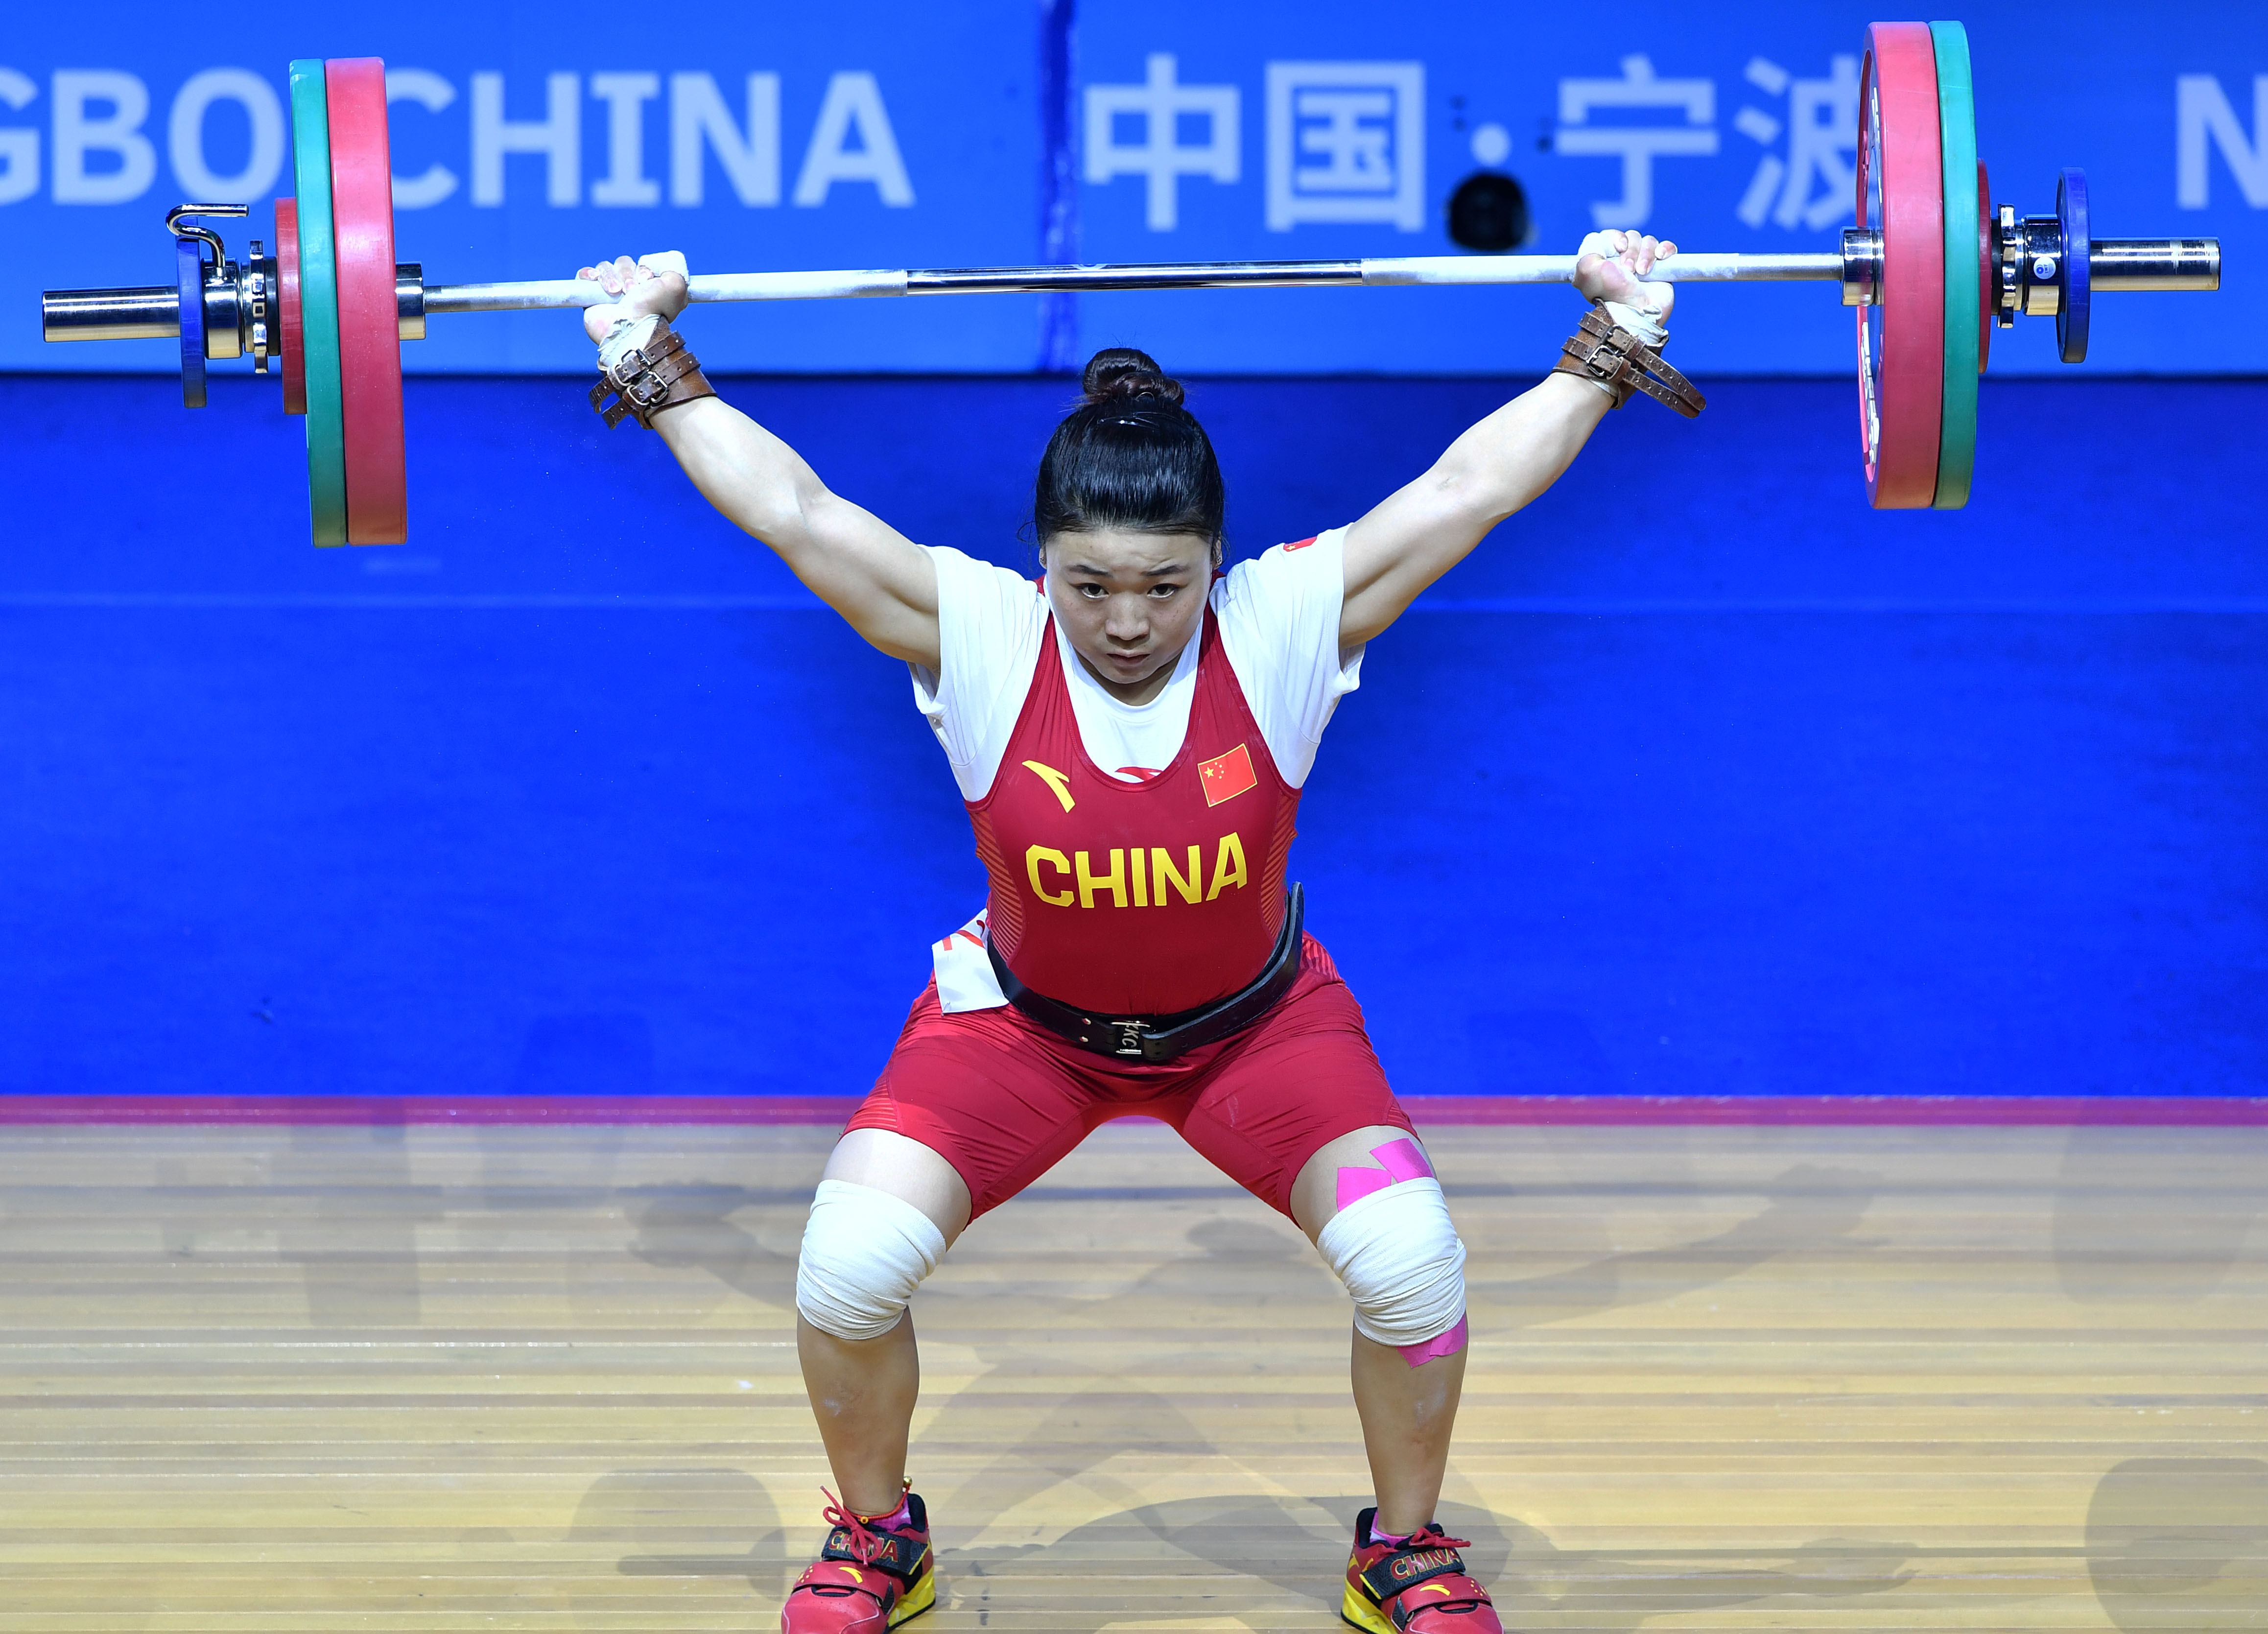 举重锦标赛暨2020年东京奥运会资格赛女子59公斤级比赛中,中国选手